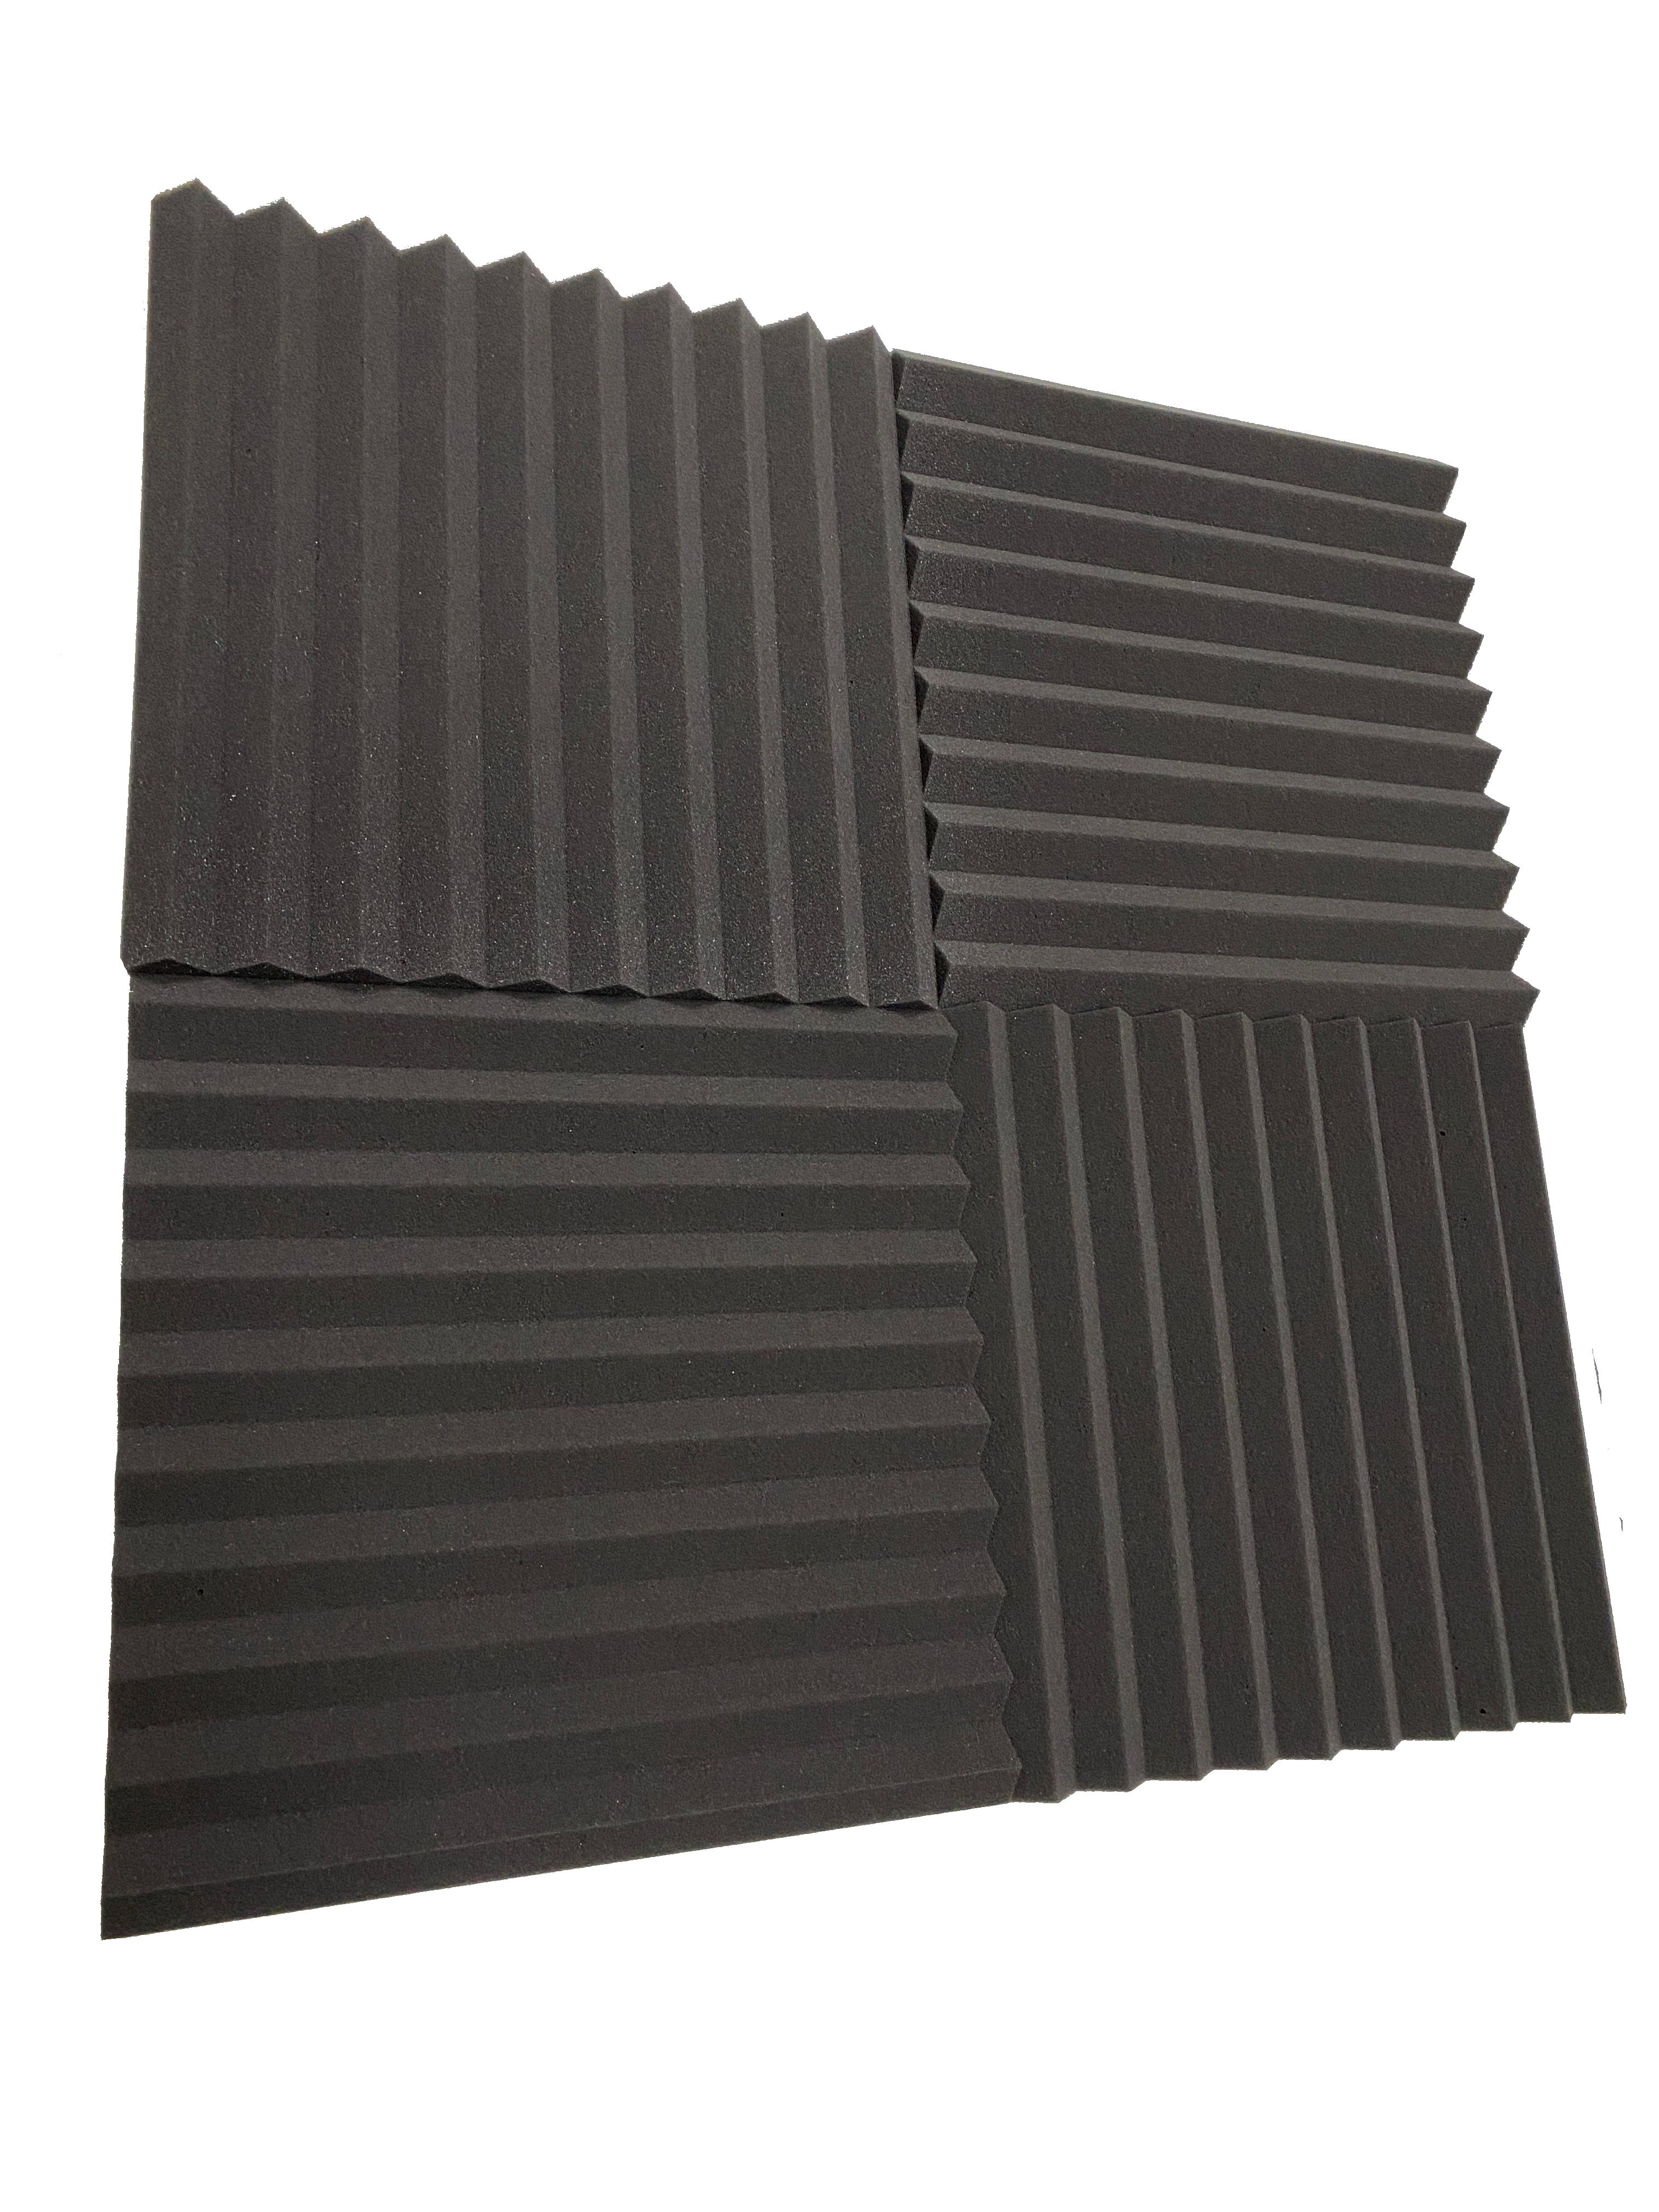 Wedge 15" Acoustic Studio Foam Tile Pack